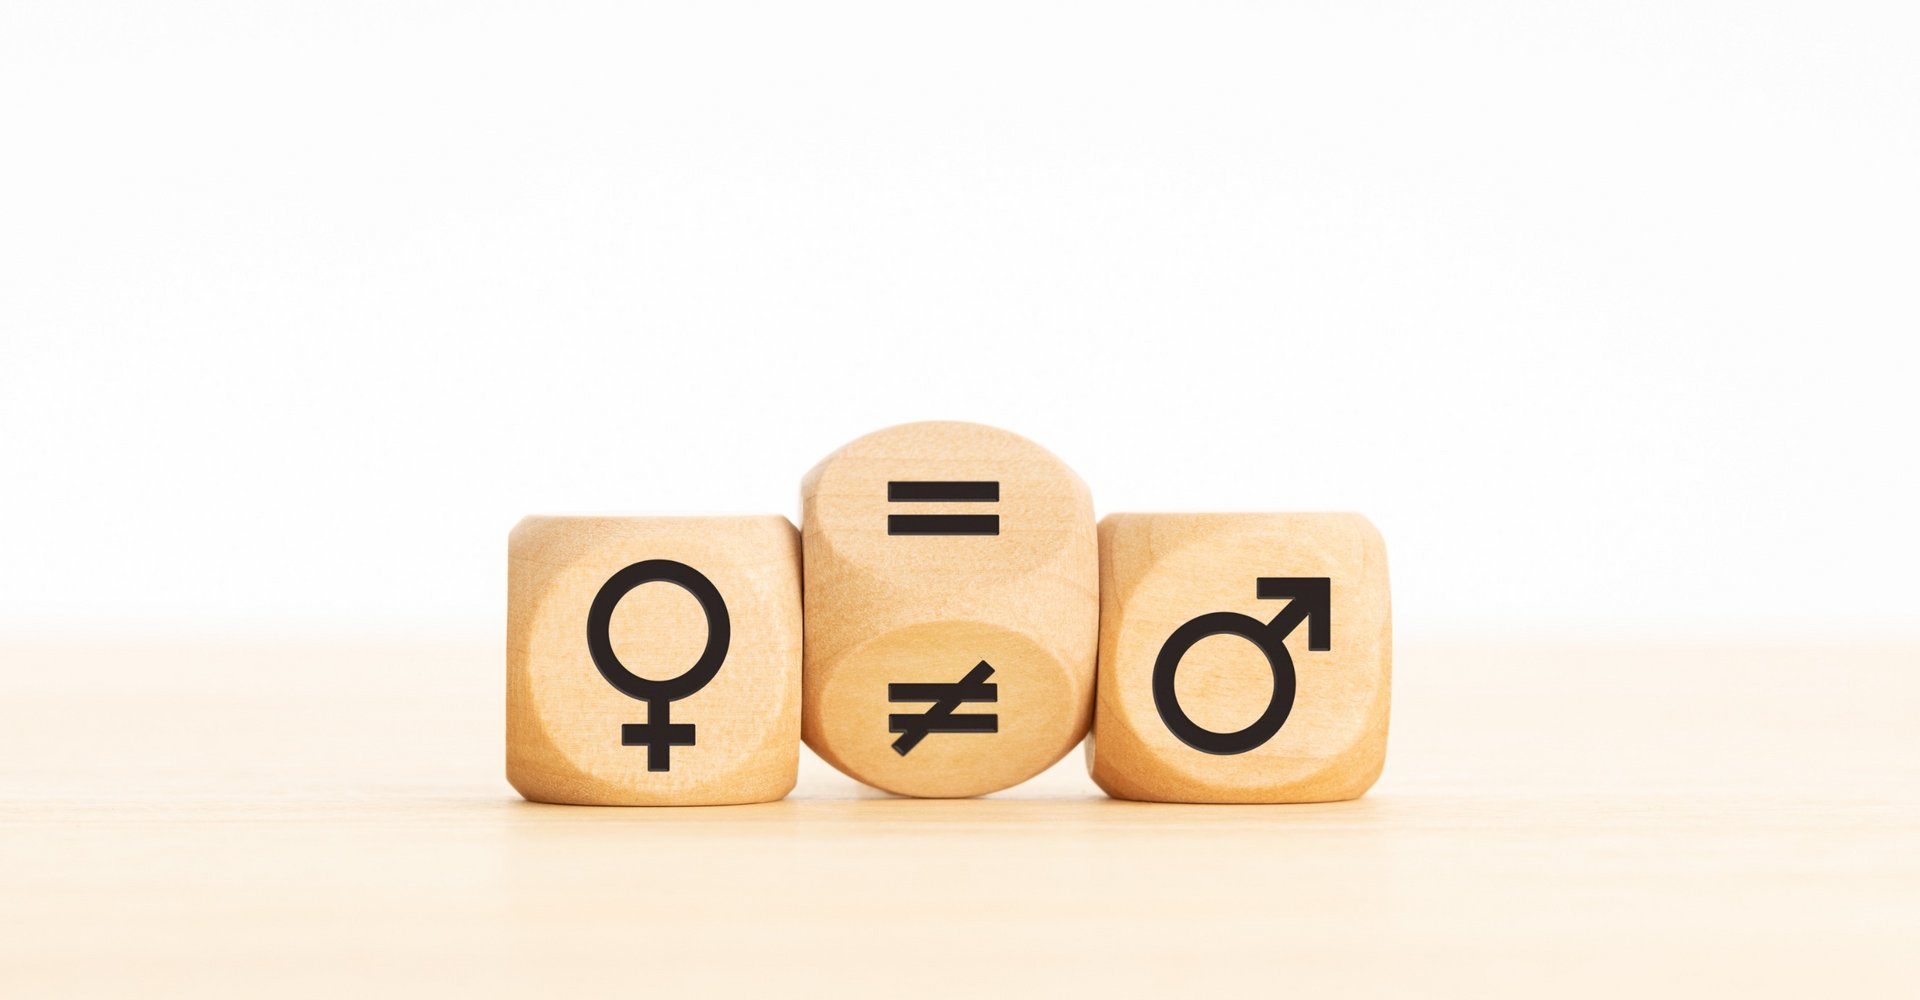 Holzklotz, der ein Ungleichheitszeichen in ein Gleichheitszeichen zwischen Symbolen für Männer und Frauen verwandelt